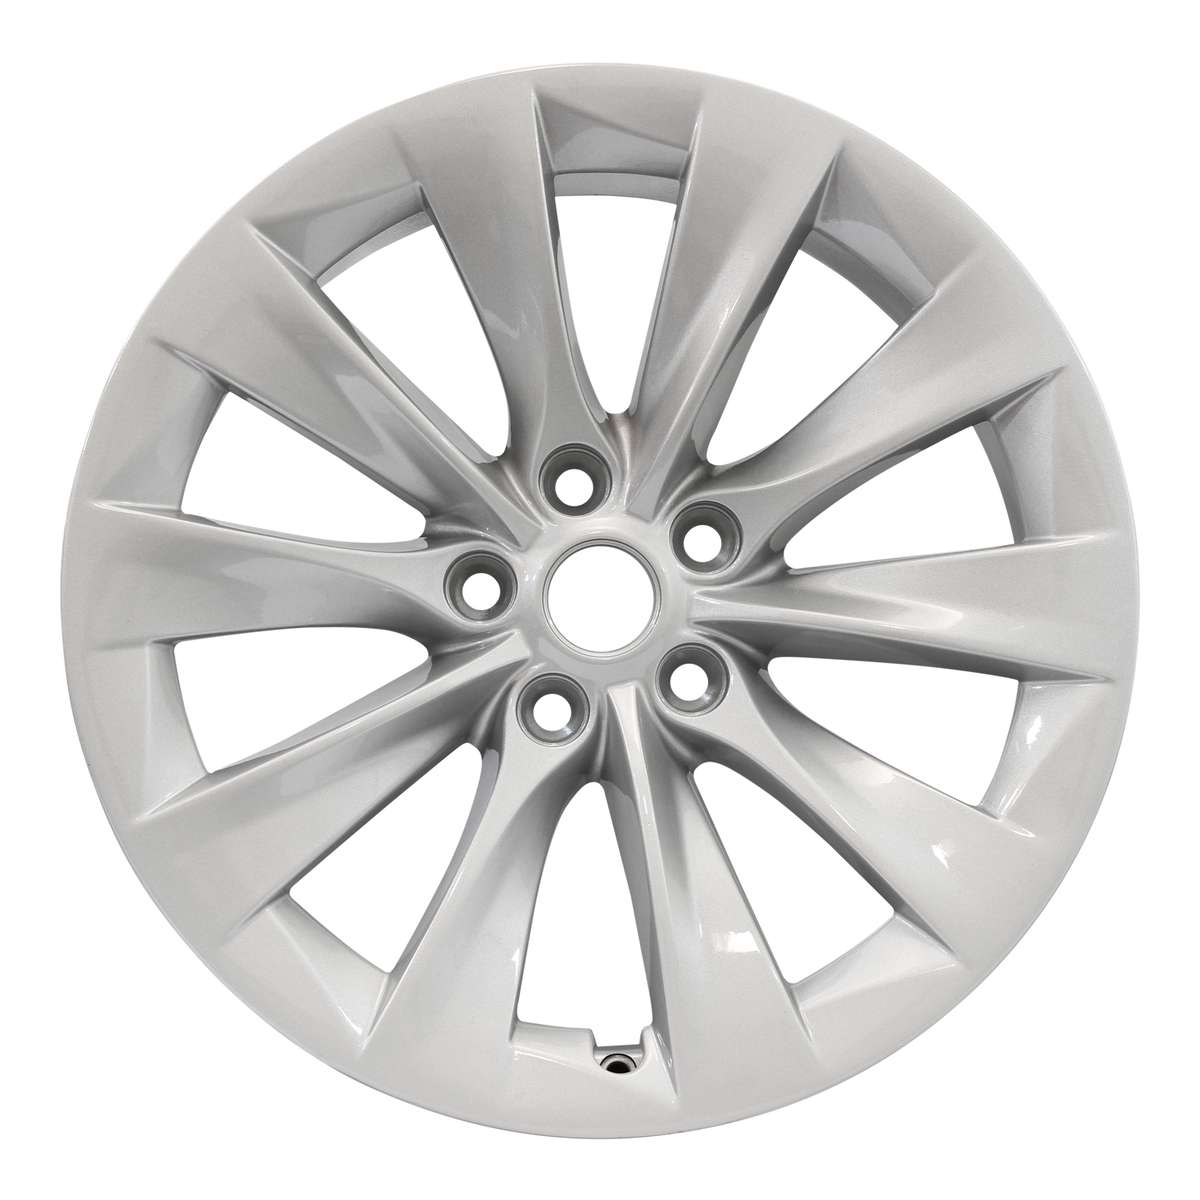 2013 Tesla Model S 19" OEM Wheel Rim Slipstream W97755S